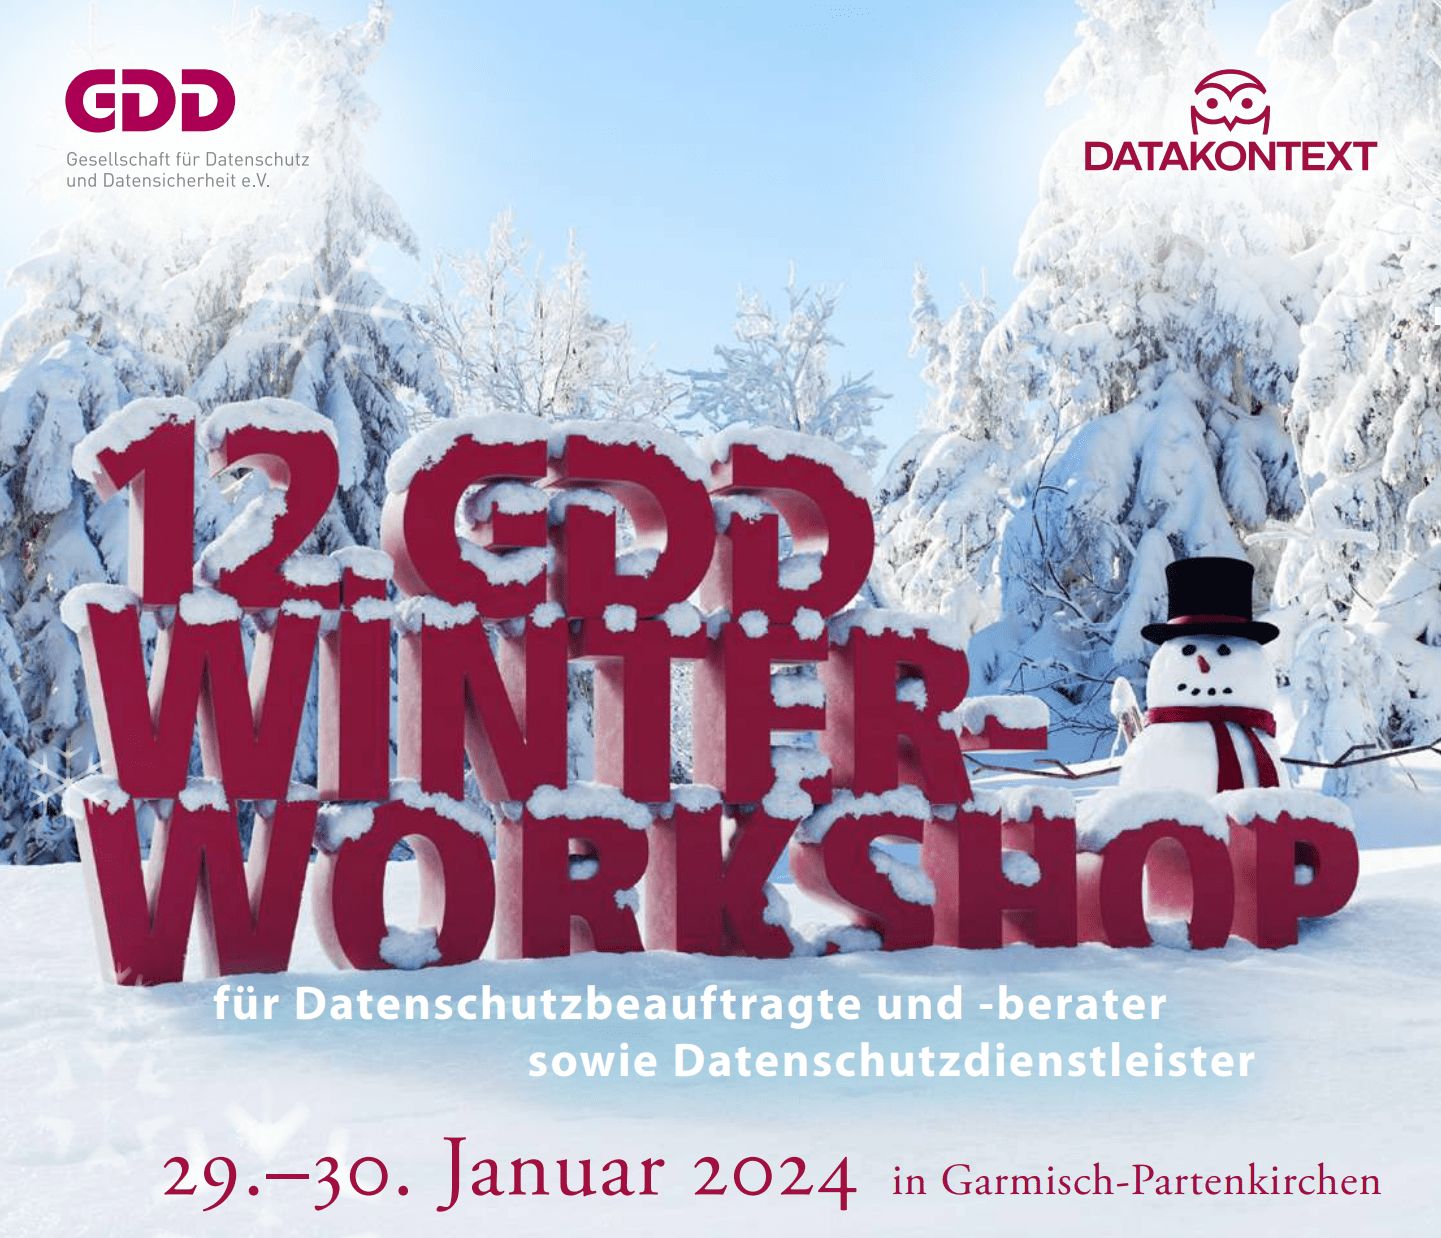 12. GDD-Winter-Workshop